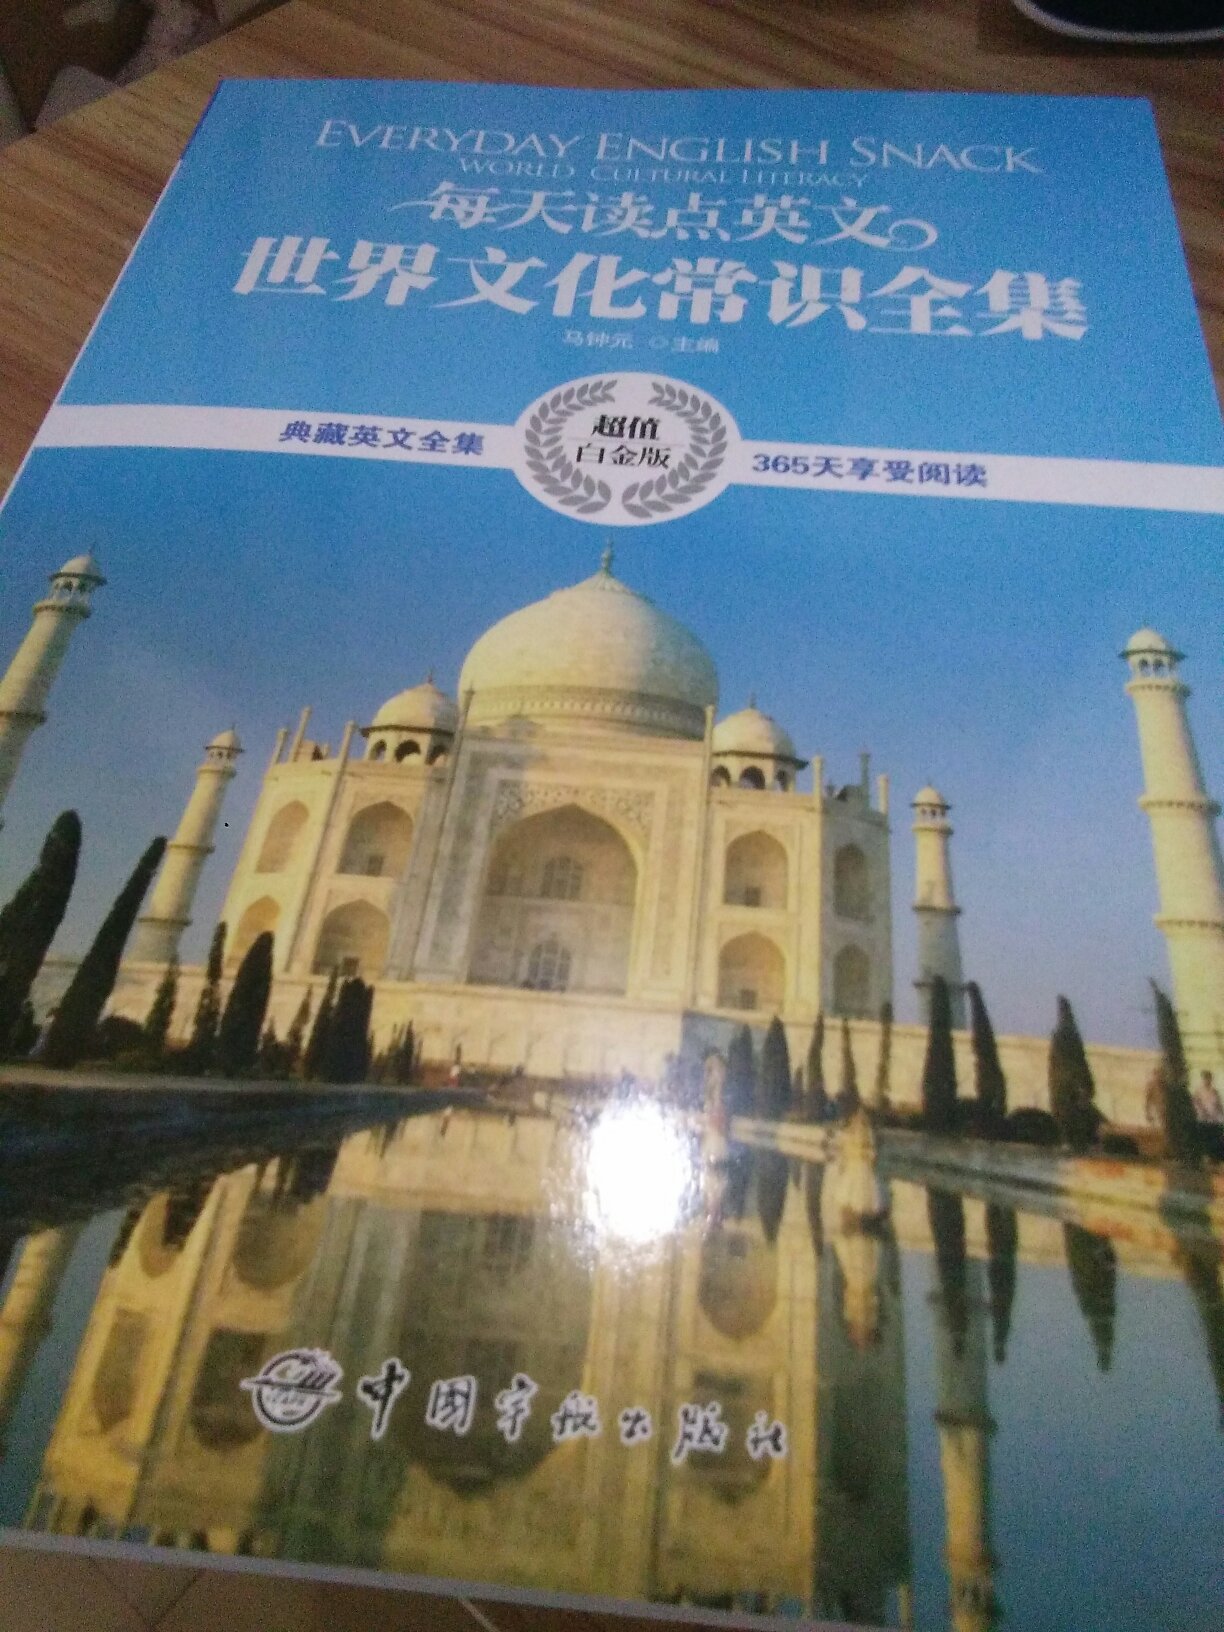 书里有好多内容，有中文解释可以和英文对照，还附带了一些照片。